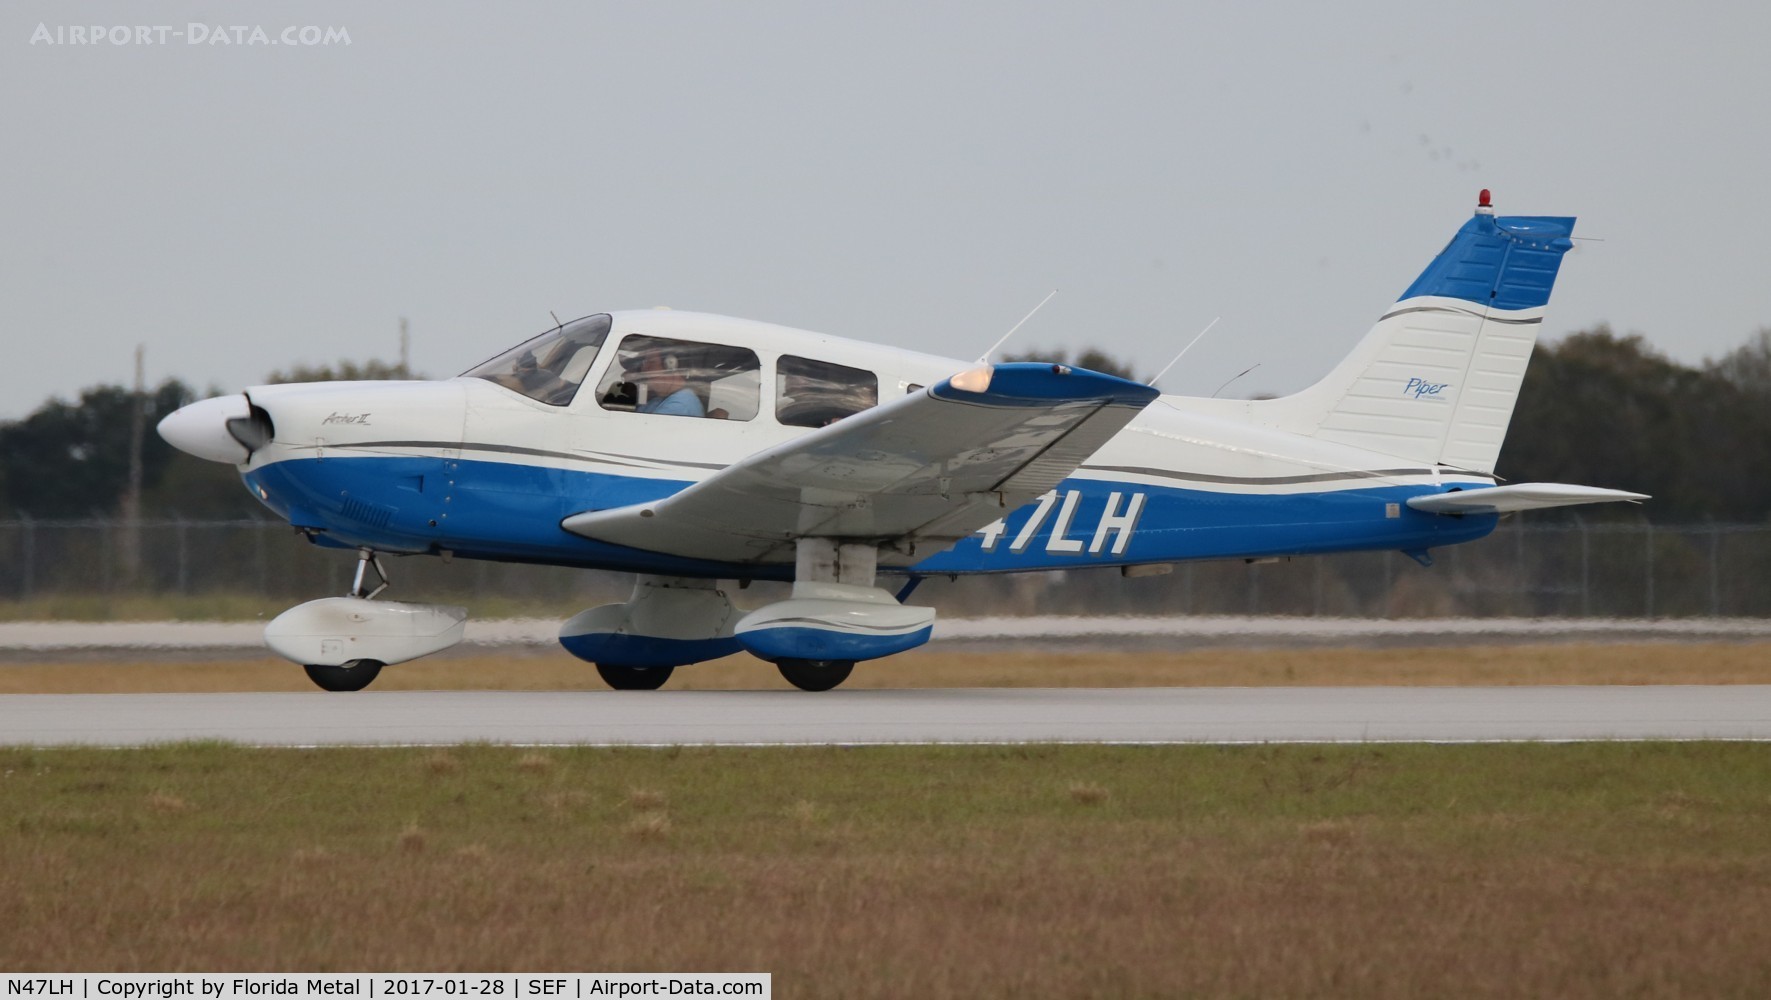 N47LH, 1979 Piper PA-28-181 C/N 28-7990480, PA-28-181